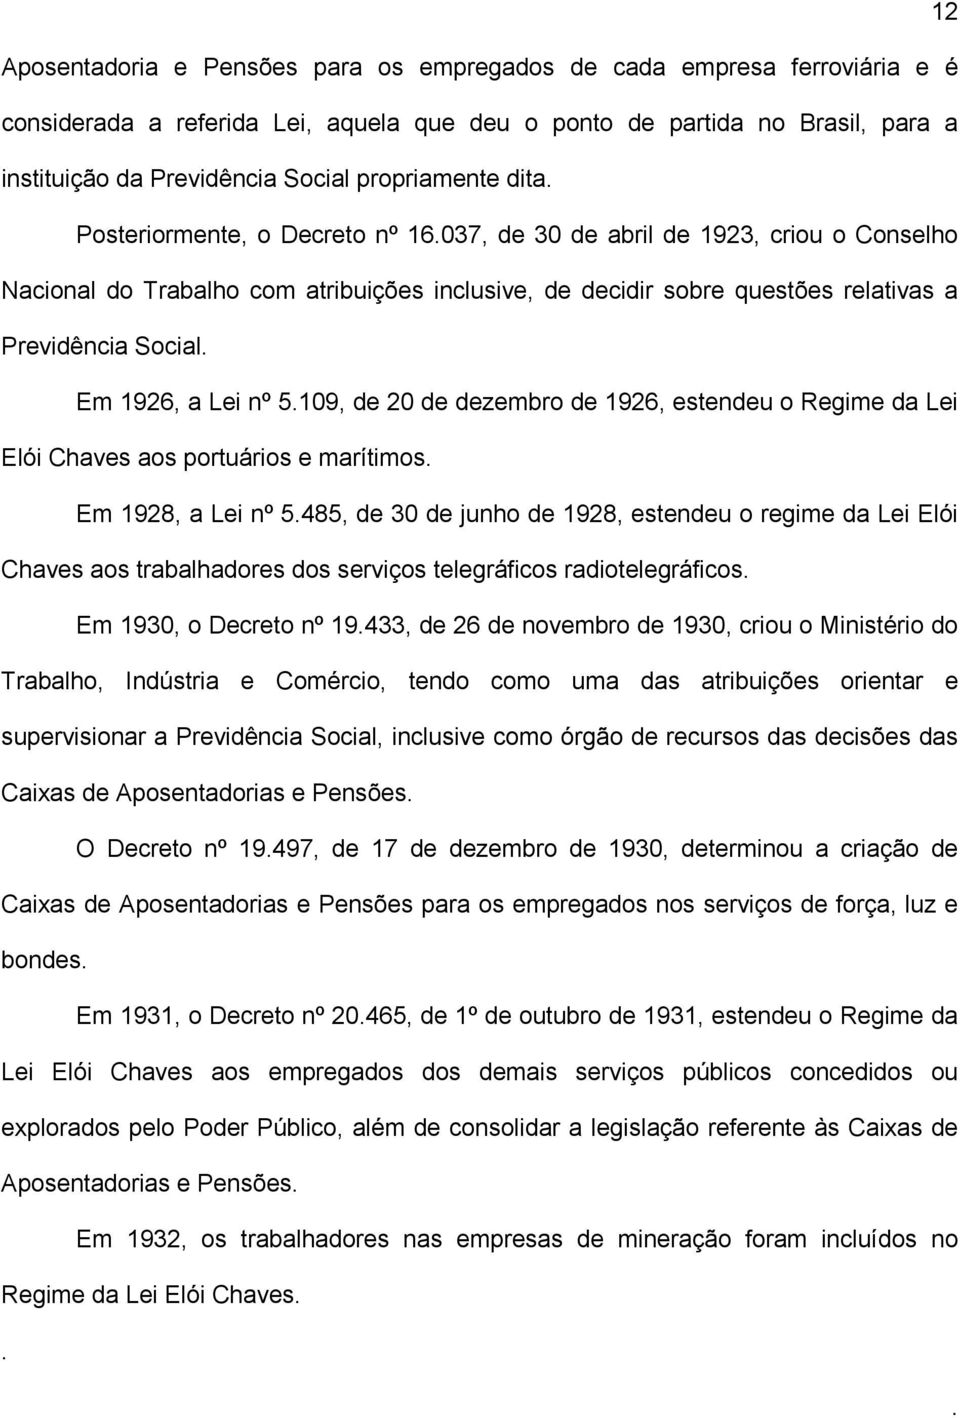 Em 1926, a Lei nº 5109, de 20 de dezembro de 1926, estendeu o Regime da Lei Elói Chaves aos portuários e marítimos Em 1928, a Lei nº 5485, de 30 de junho de 1928, estendeu o regime da Lei Elói Chaves